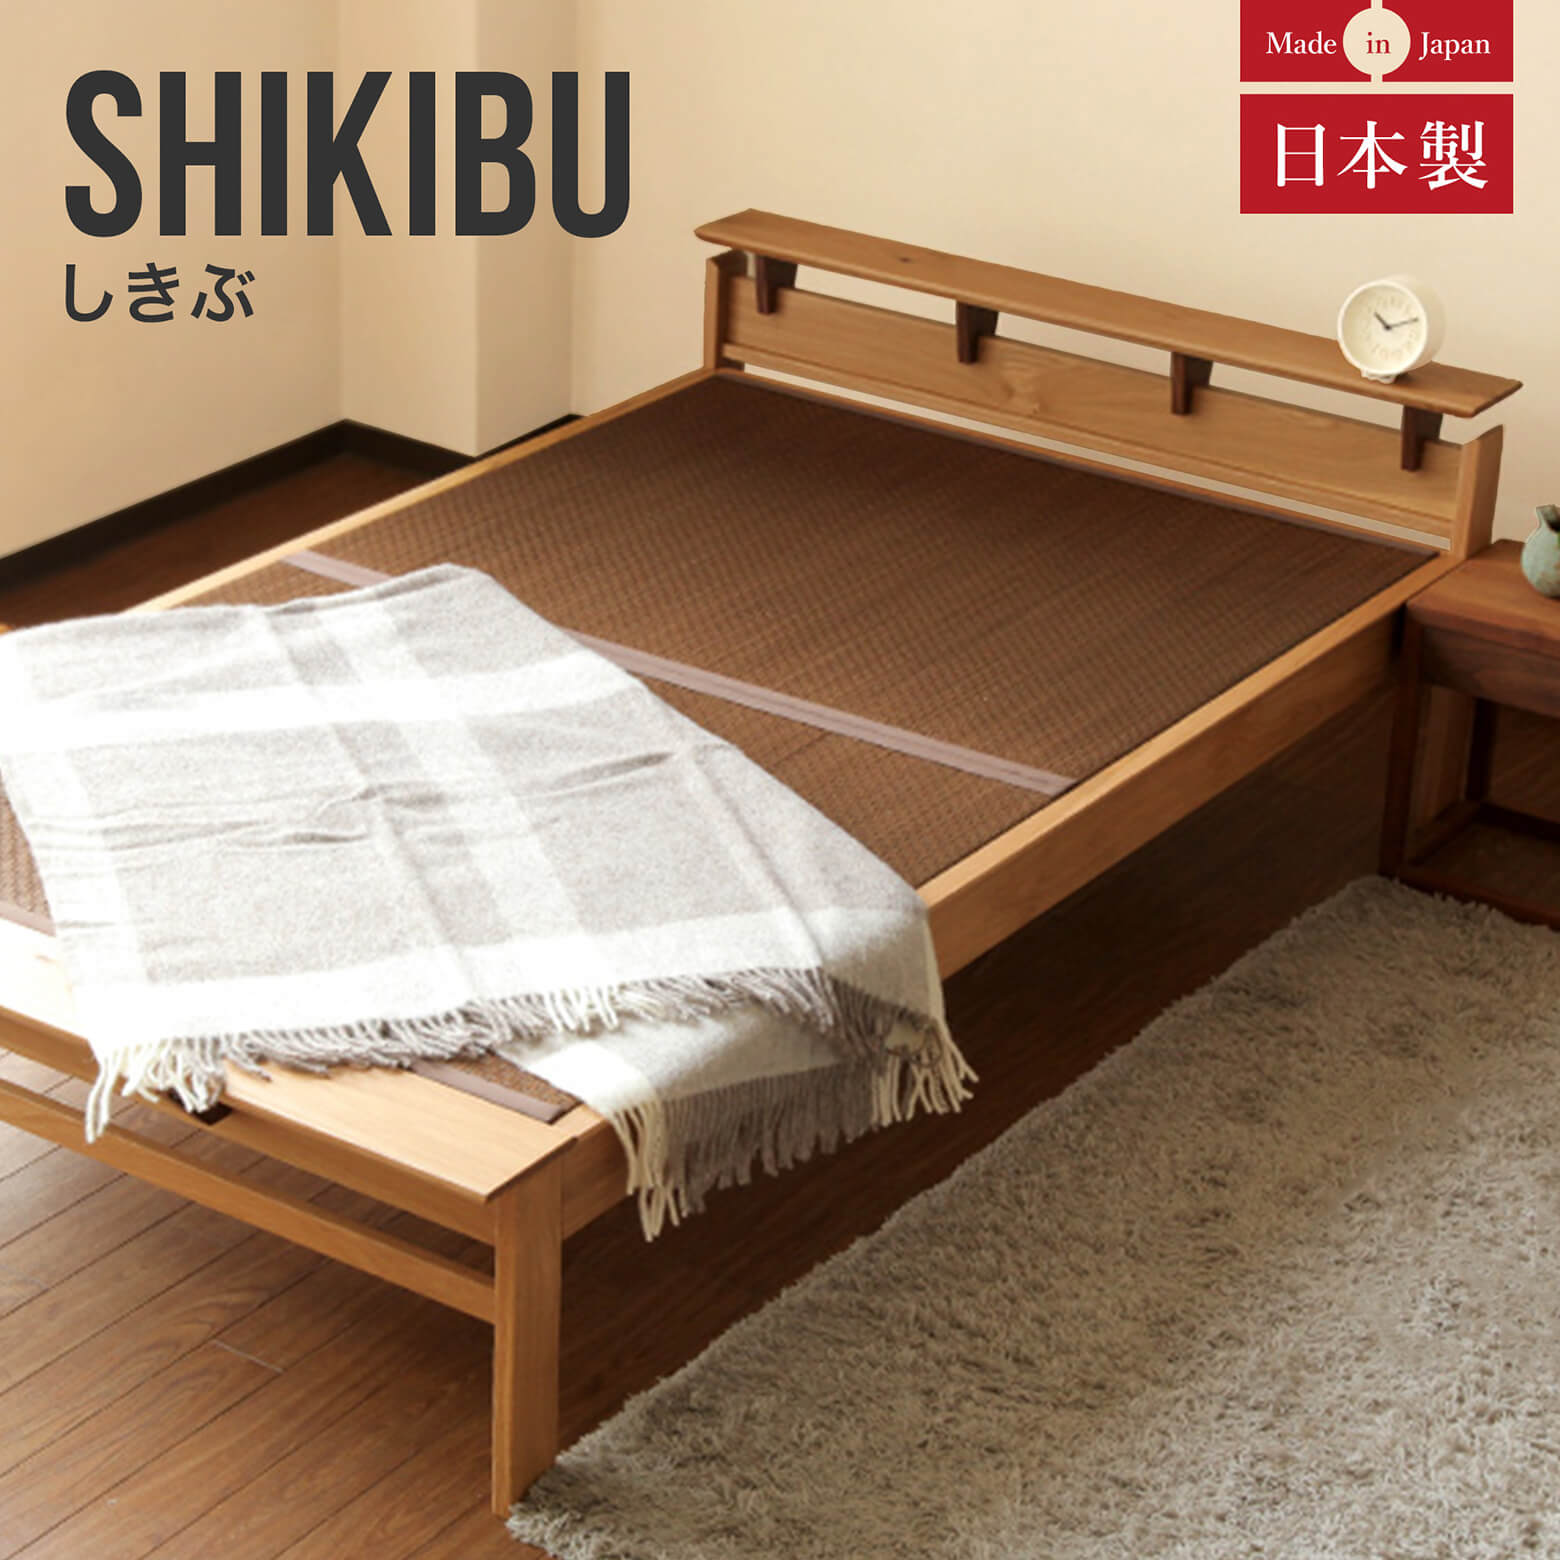 シングルサイズ】しきぶーshikibuー【畳ベッド】【組立設置付】 | 日本 